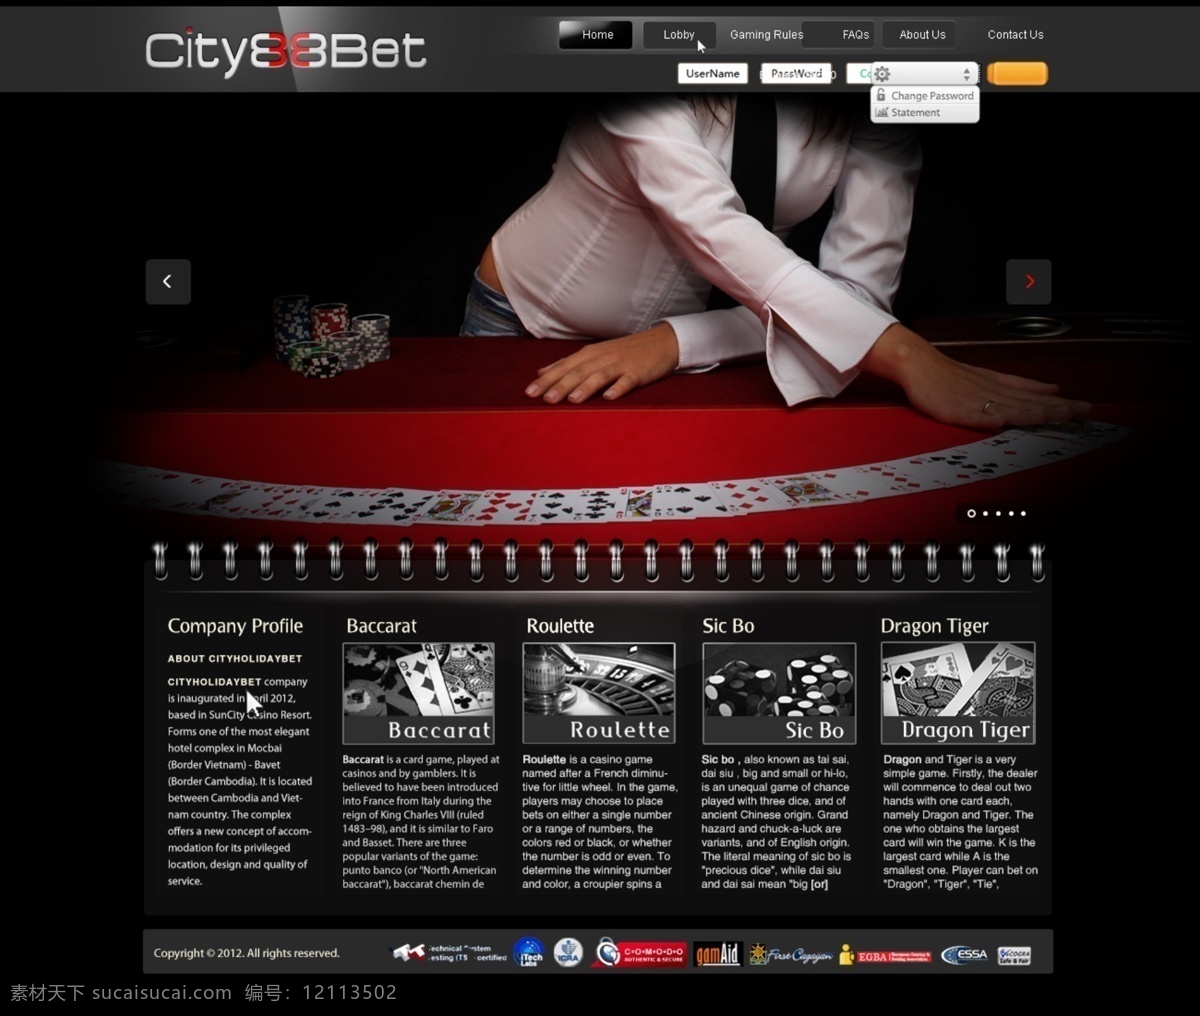 casino 网页 网站 网站效果图 游戏 中文模板 博彩 真人 web 界面设计 网页素材 其他网页素材